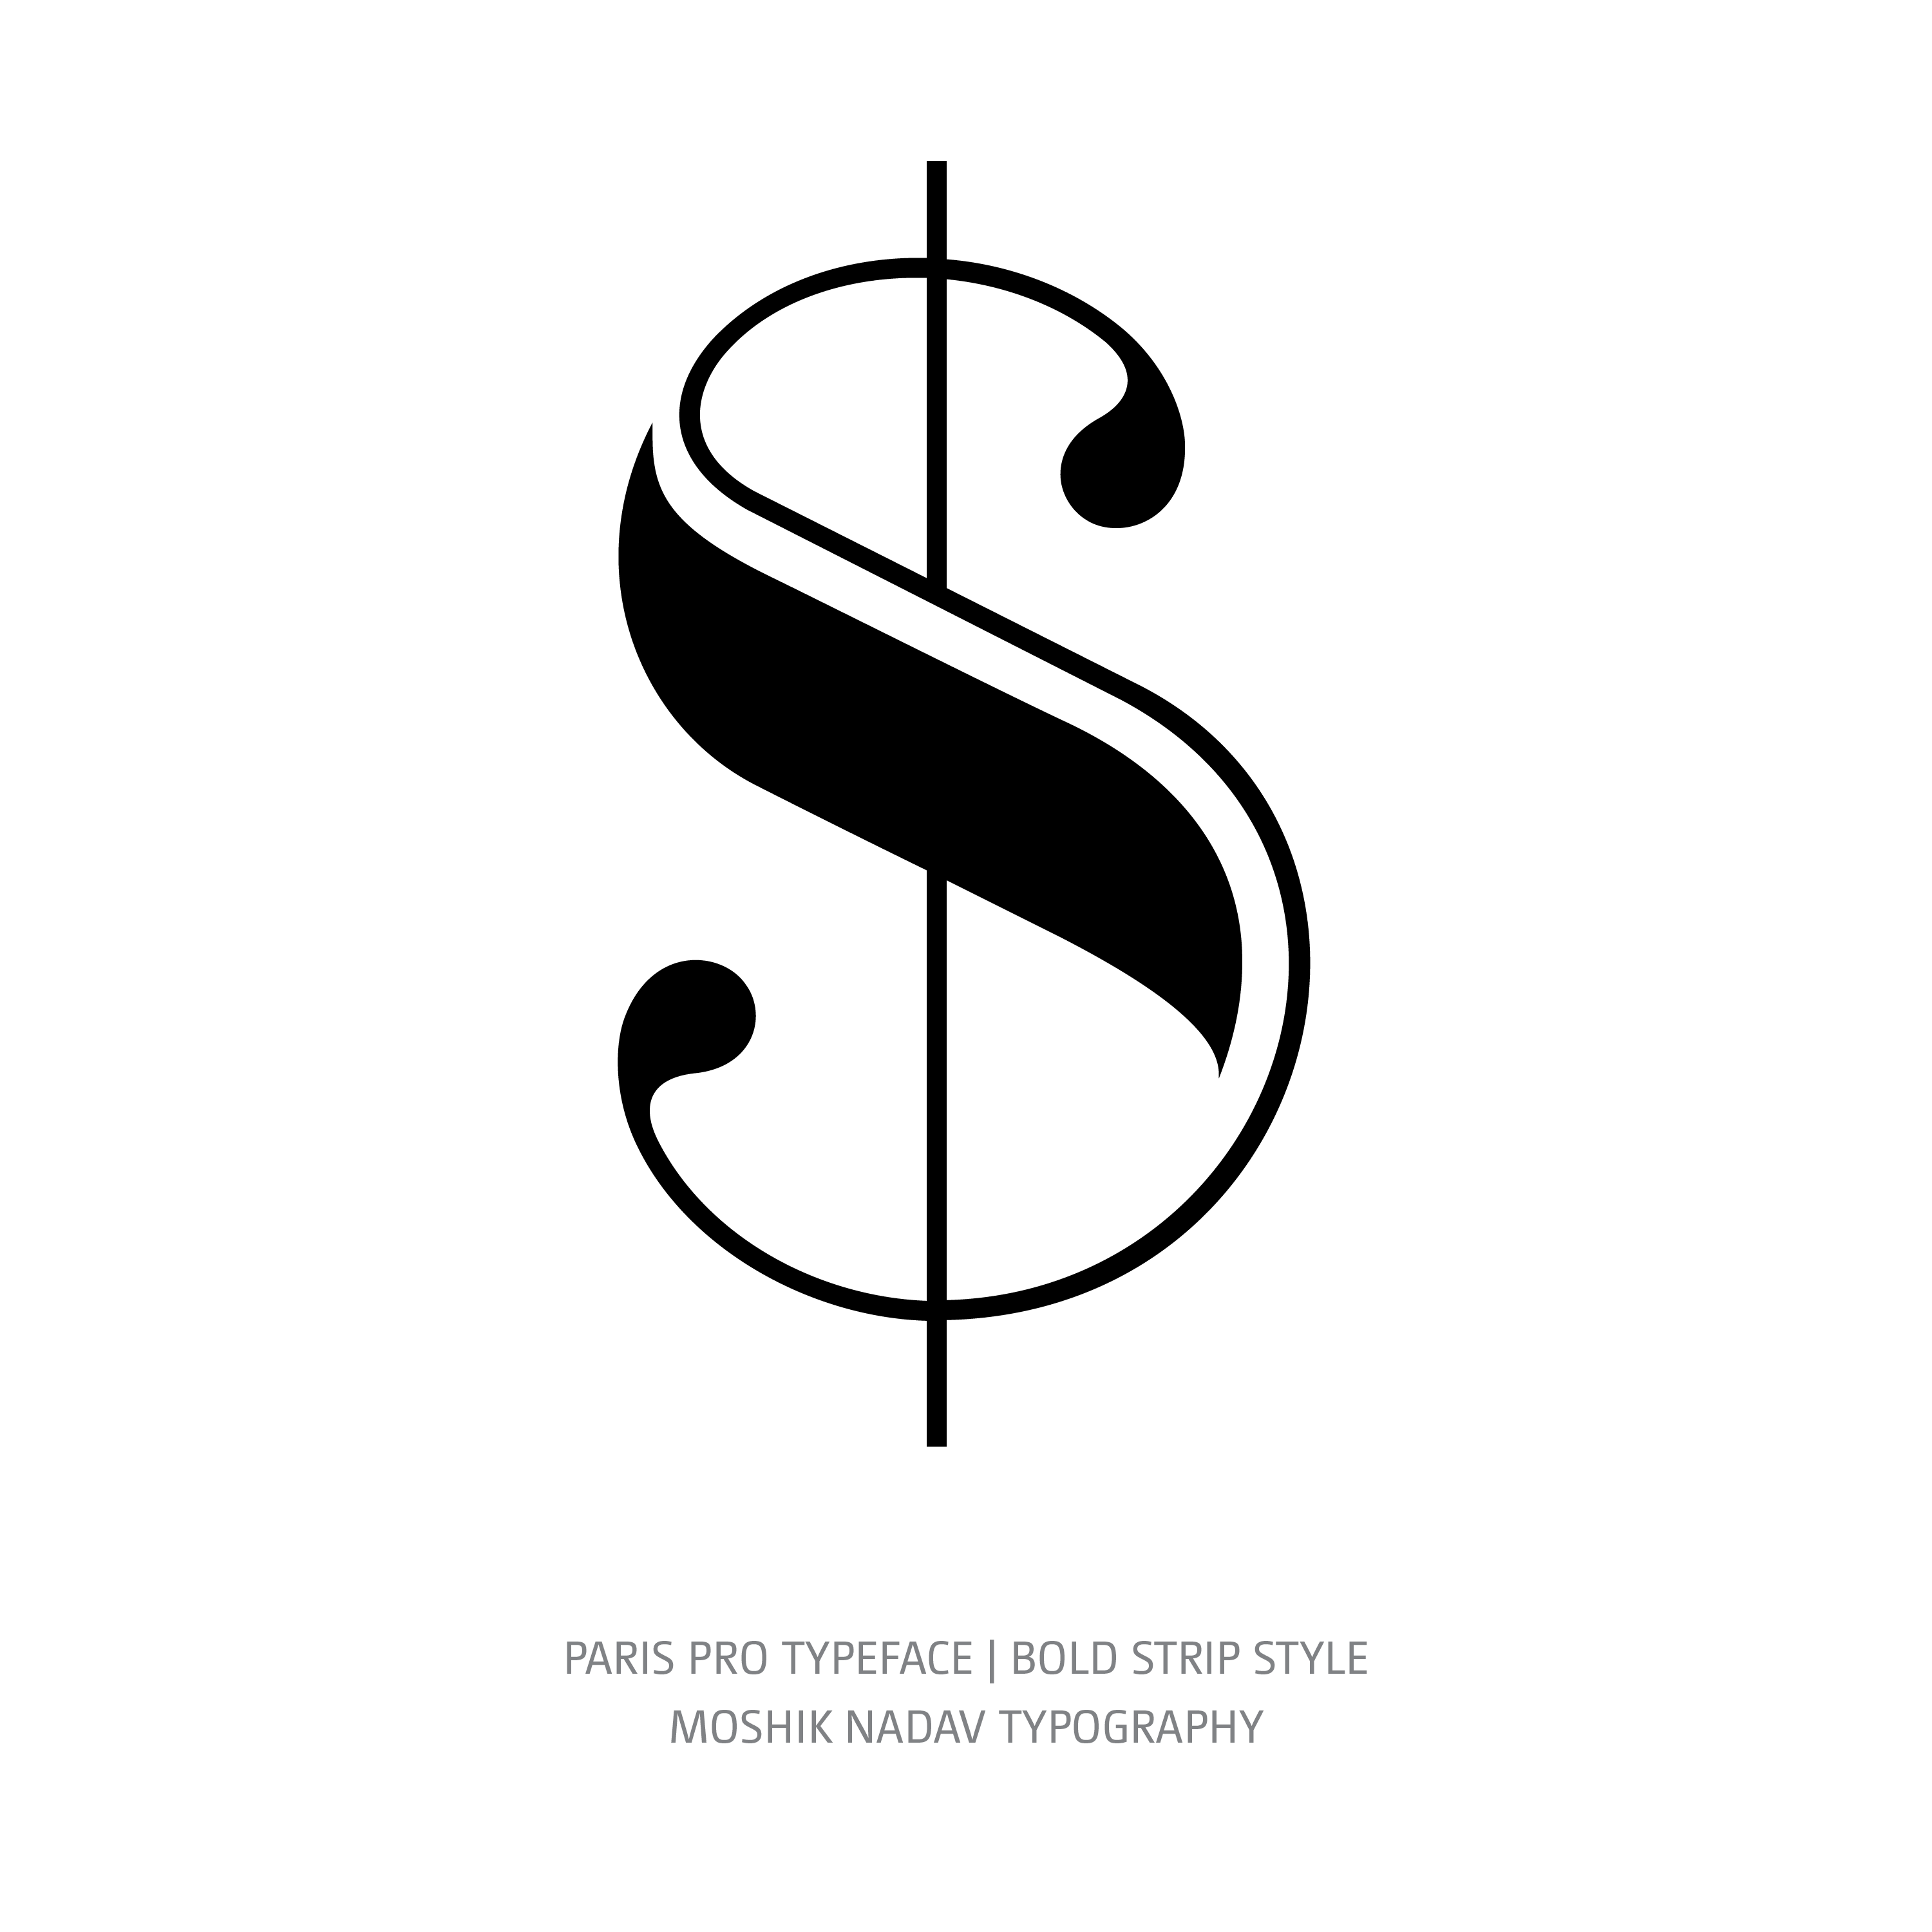 Paris Pro Typeface Bold Strip $